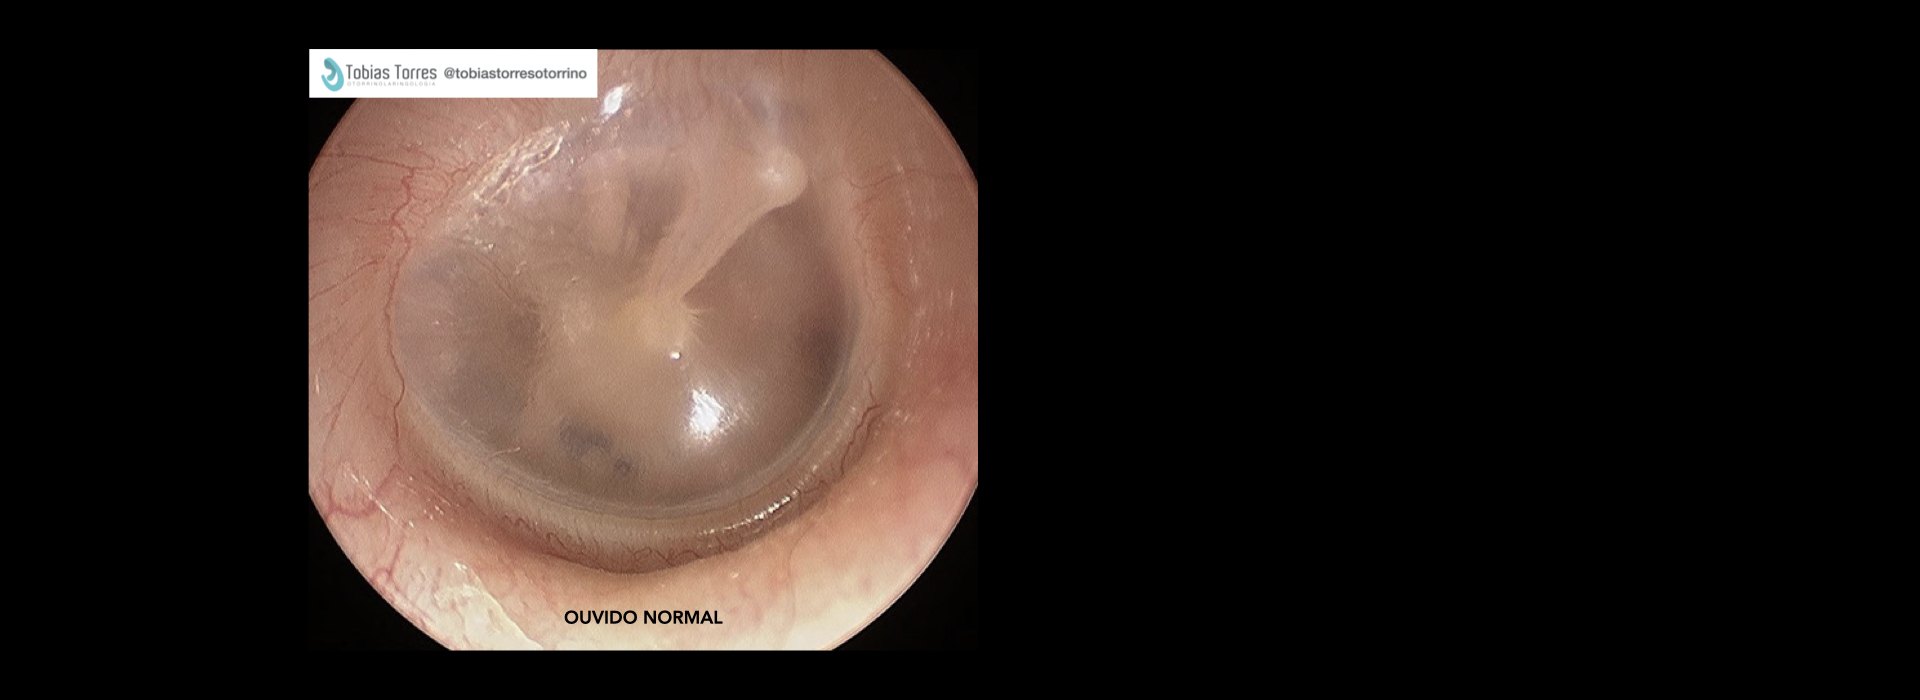 Video-Otoscopia - Exame Endoscópico do Ouvido